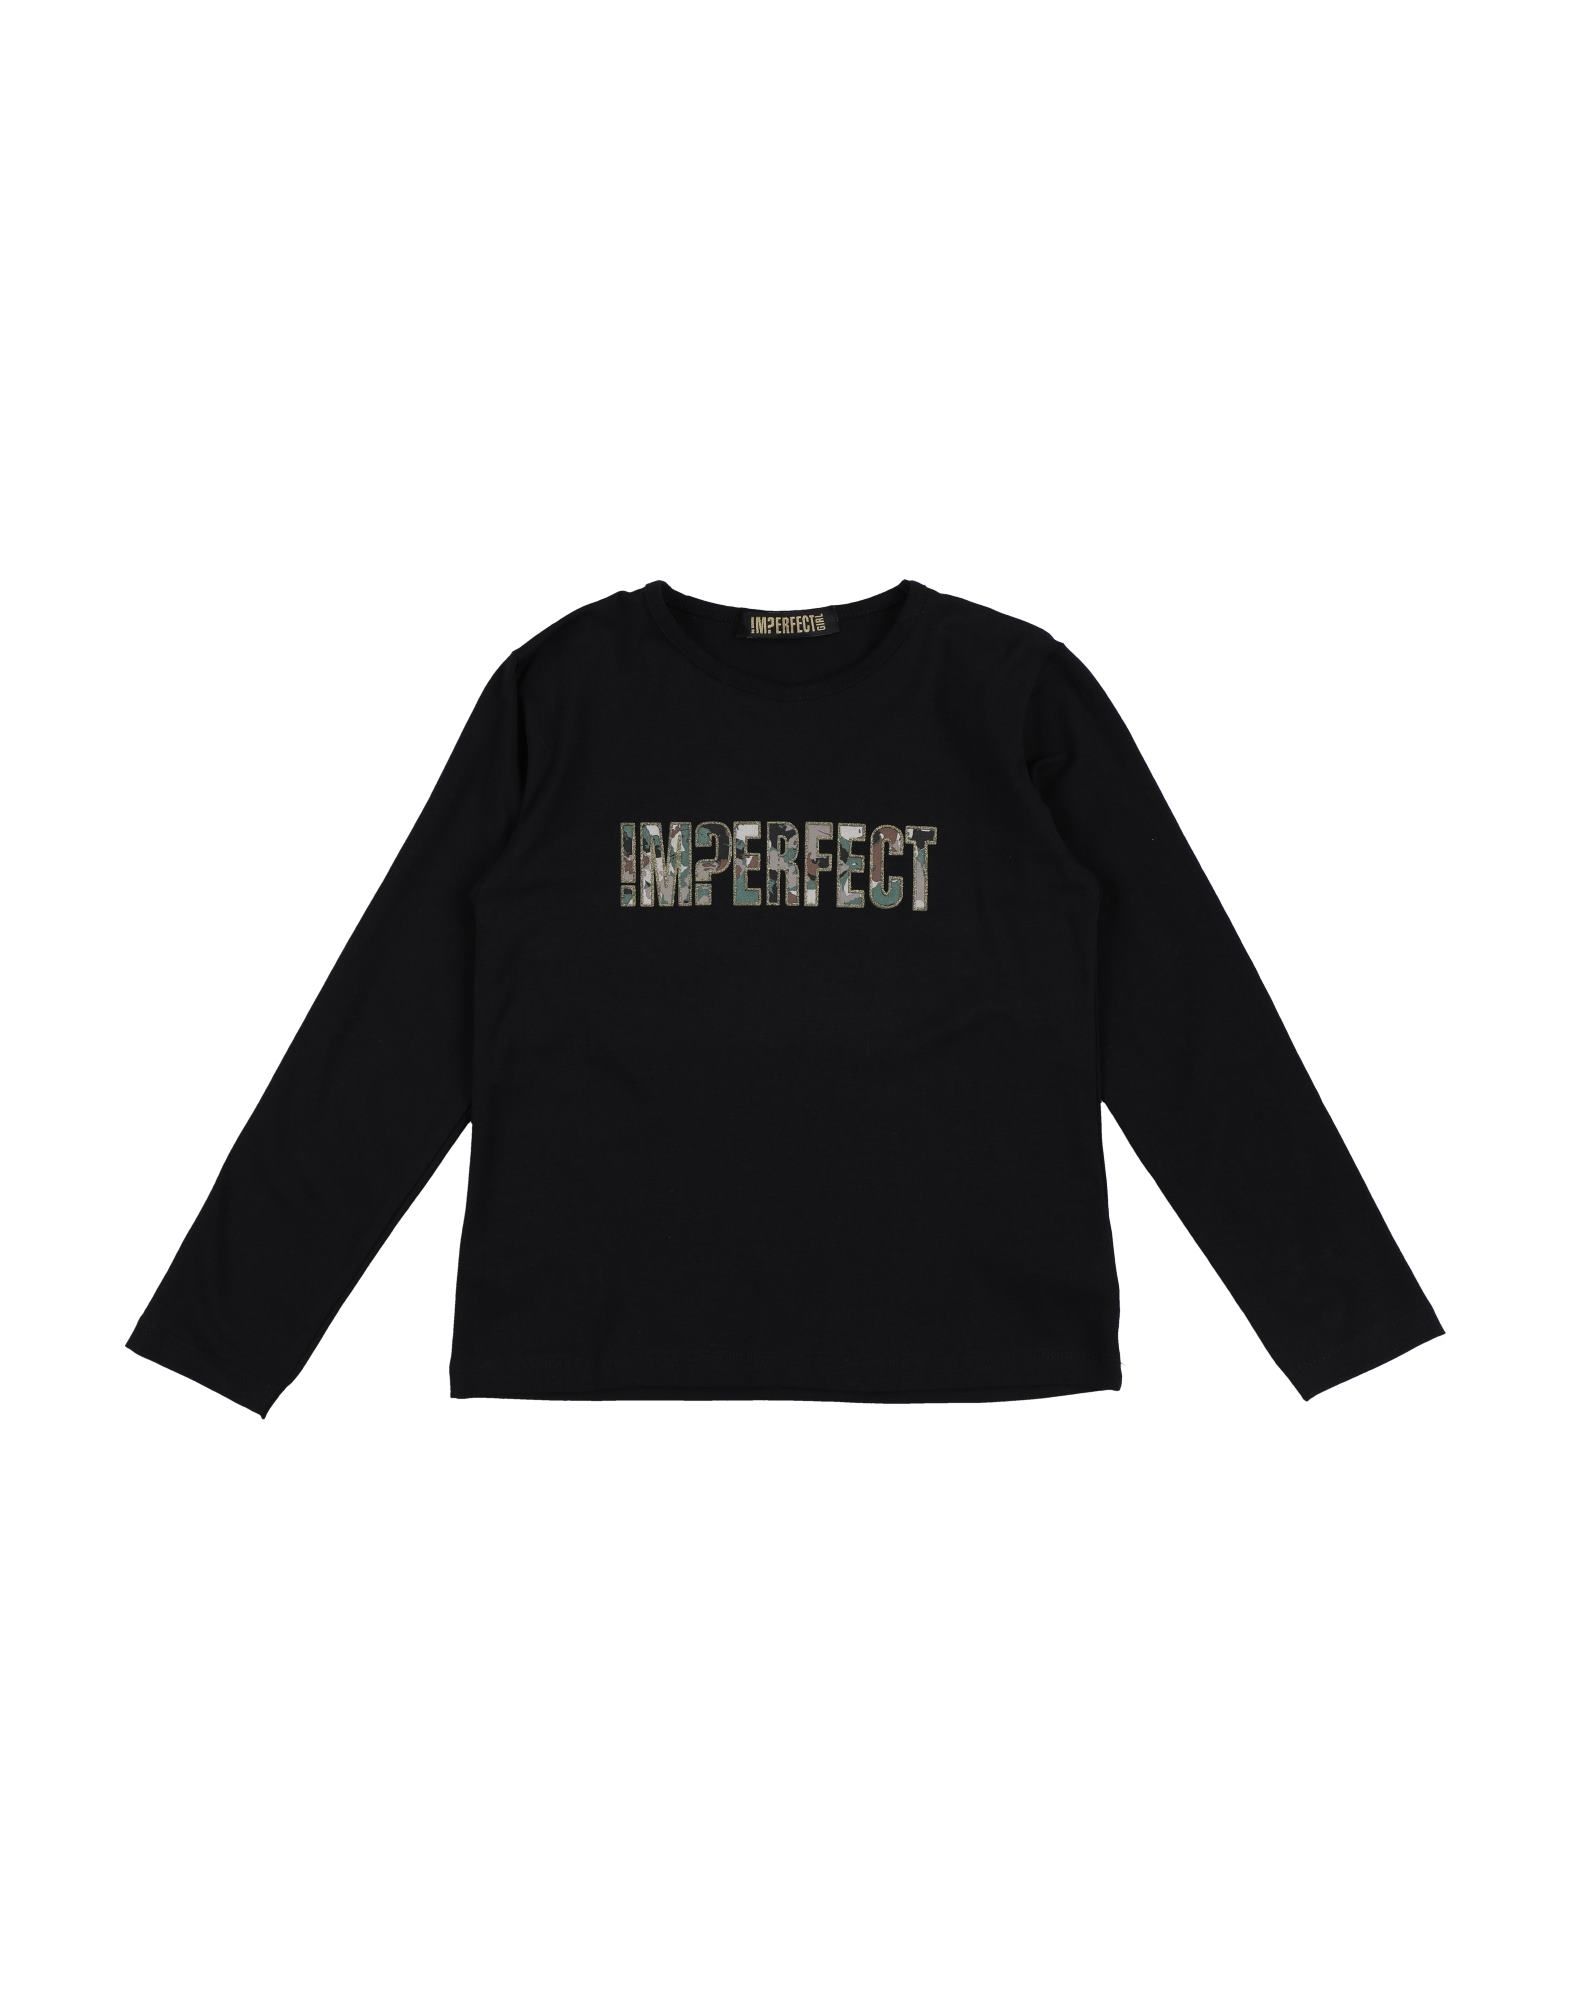 !m?erfect Kids'  Toddler Girl T-shirt Black Size 6 Cotton, Elastane